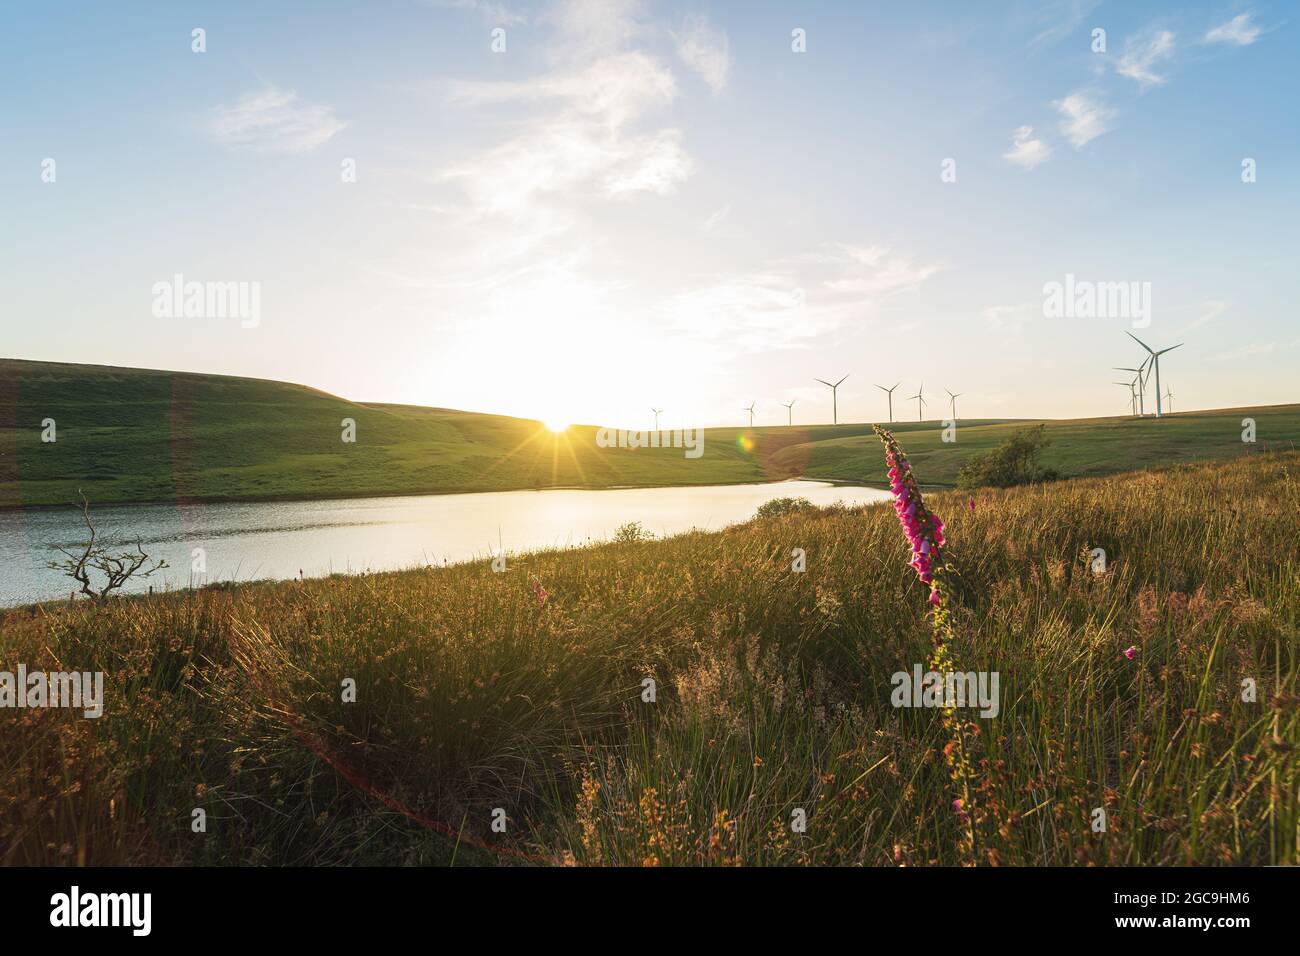 Windpark und ein See bei Sonnenuntergang. Natürliche saubere Energie, Umweltschutzkonzept. Oberes Lliw-Reservoir aus Brynllefrith Plantation, Wales, Vereinigtes Königreich. Nutzung von Windkraft in Großbritannien Stockfoto